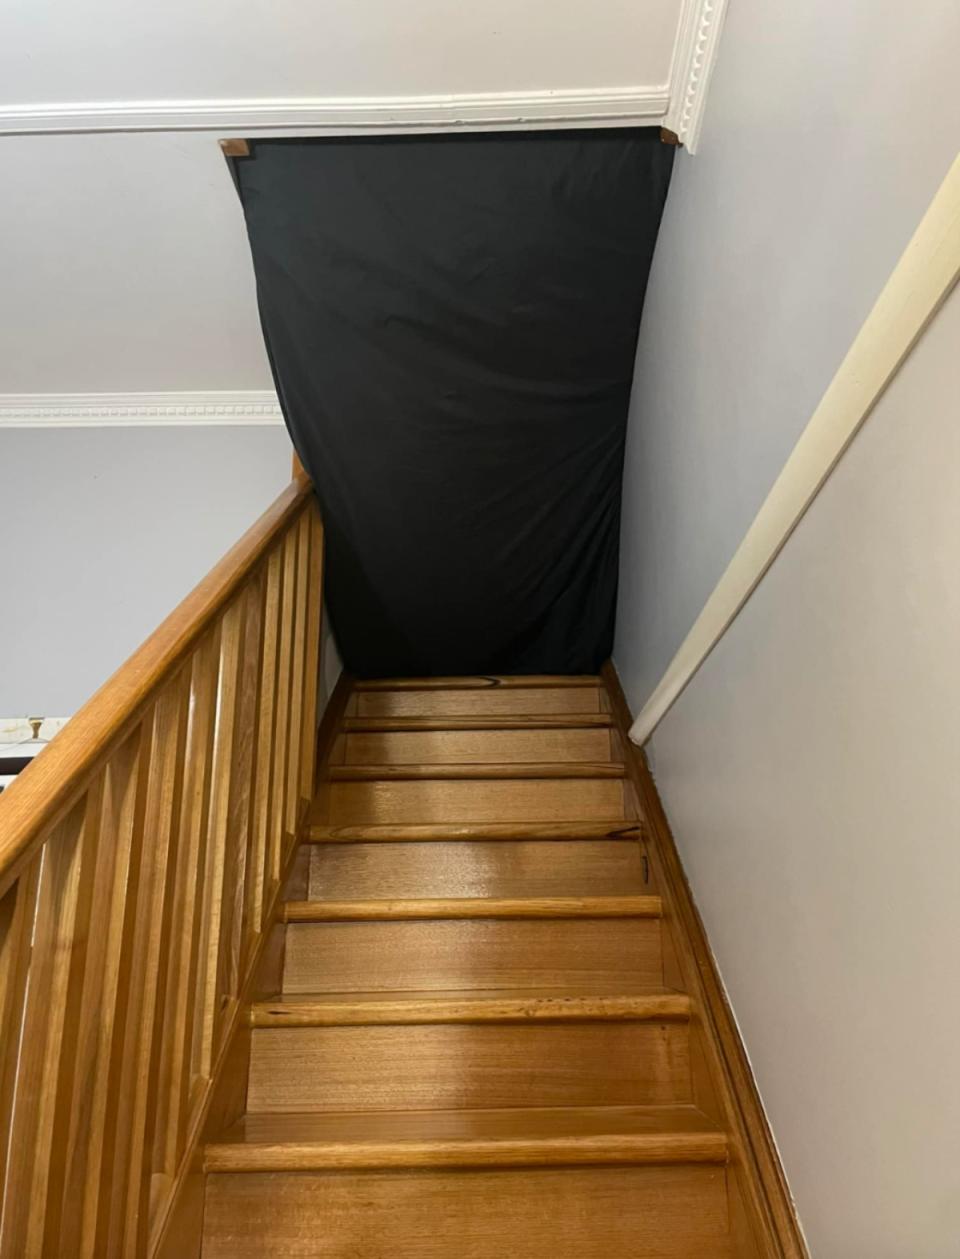 mattress wedged into stairwell. 